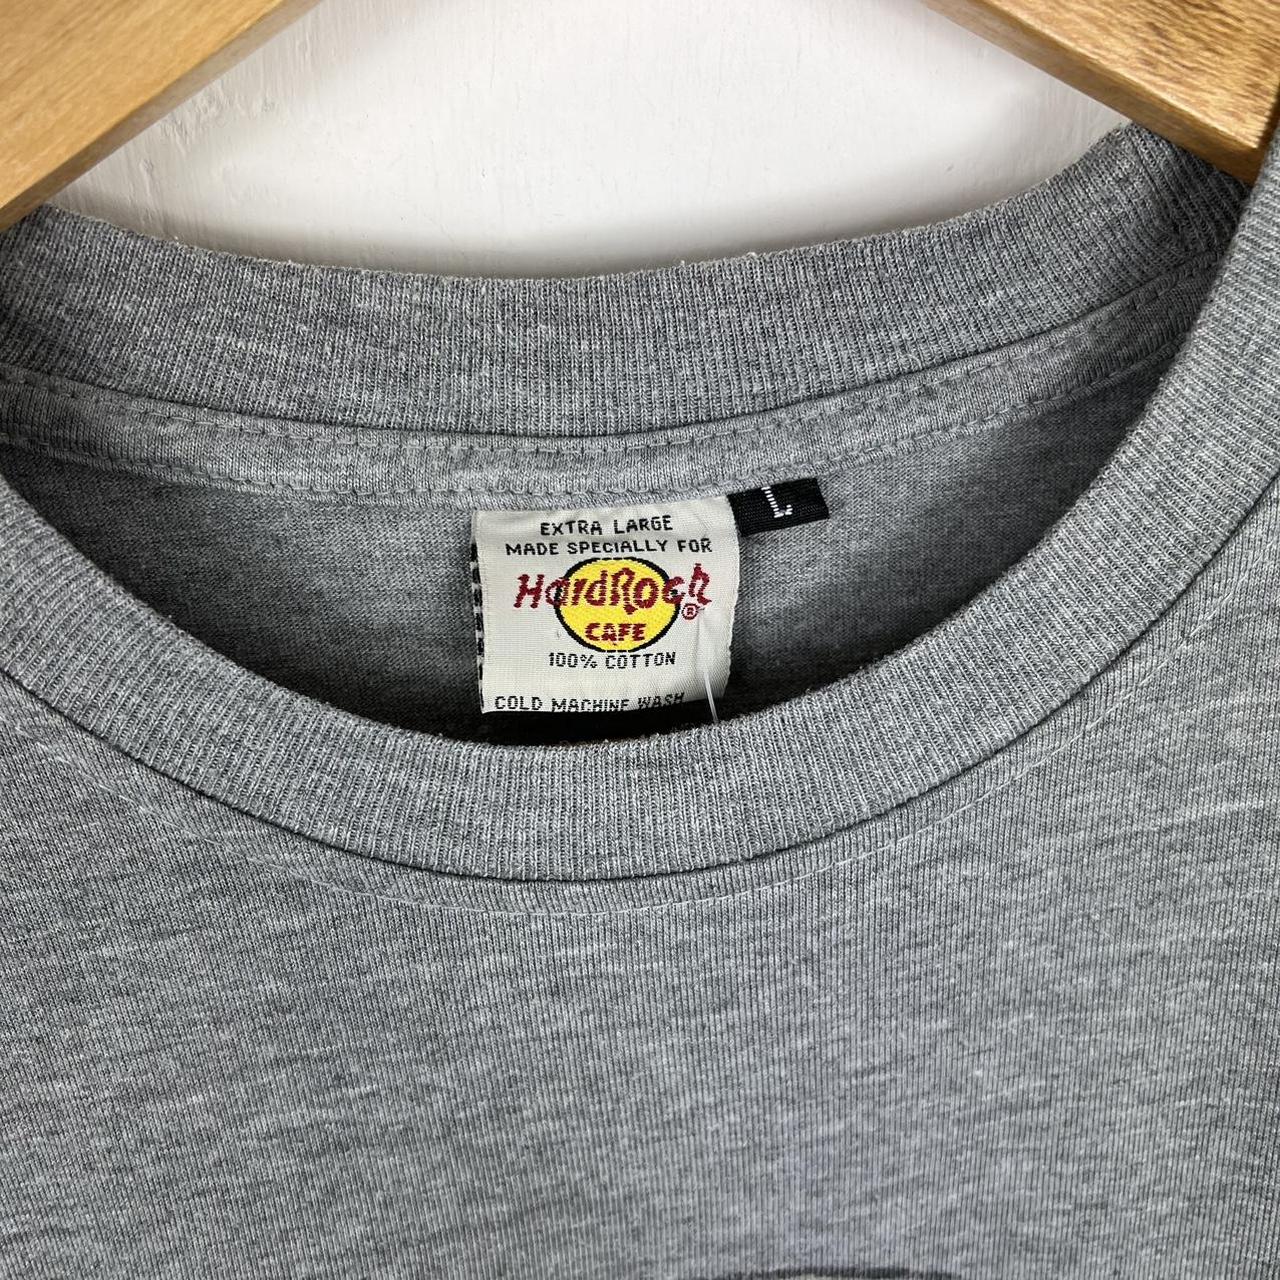 Hard Rock Cafe t shirt medium